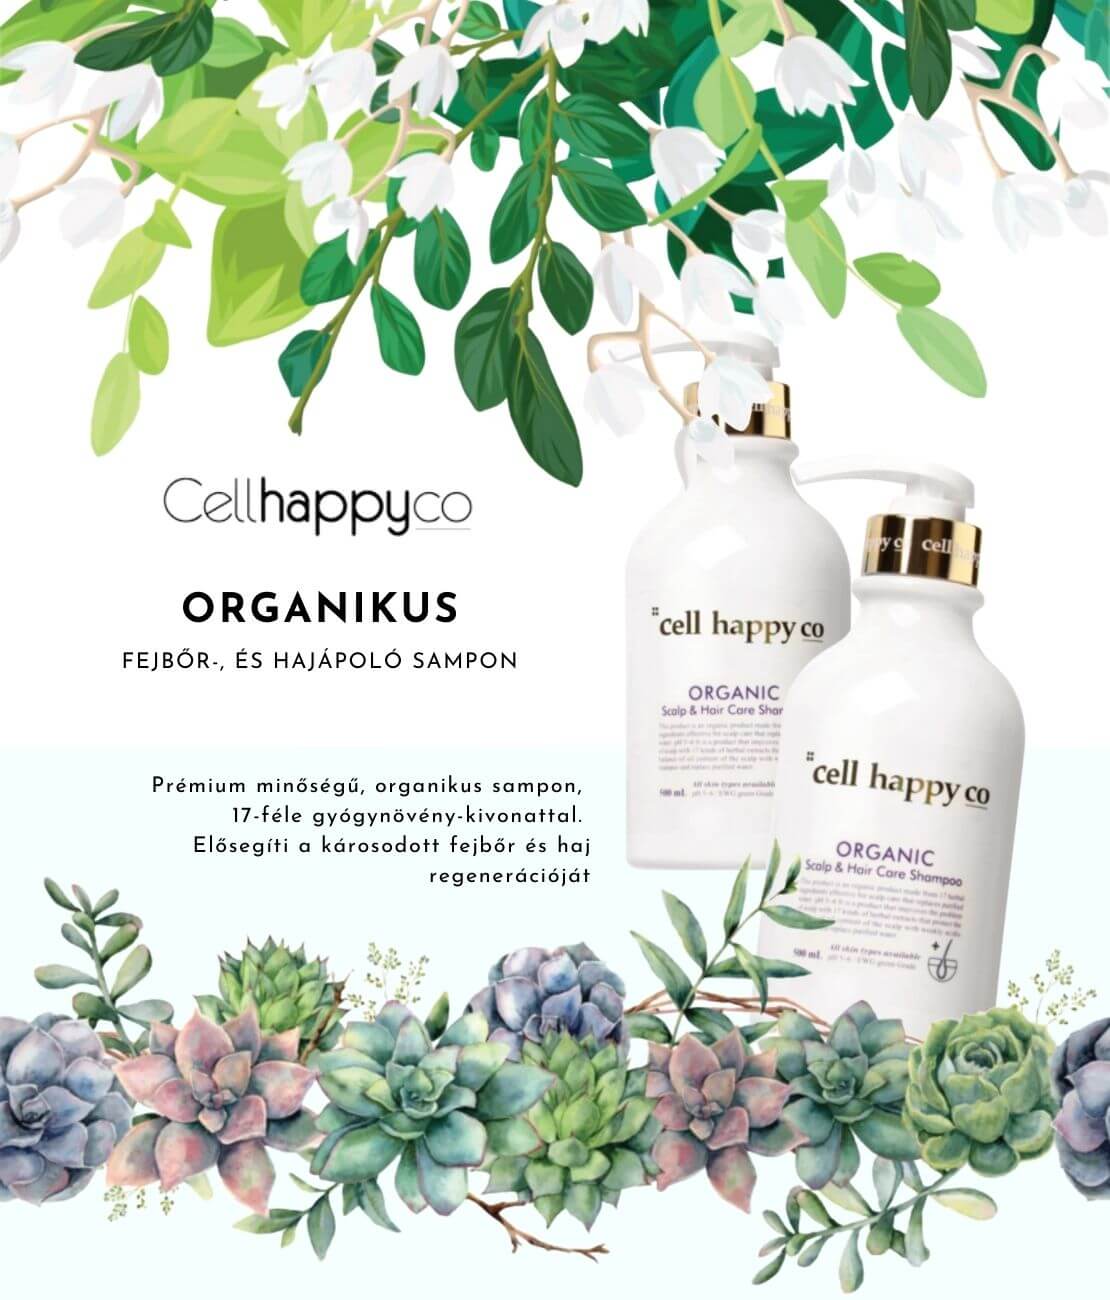 cellhappy-organic-hair-care-shampoo-cellhappy-organikus-sampon-leiras